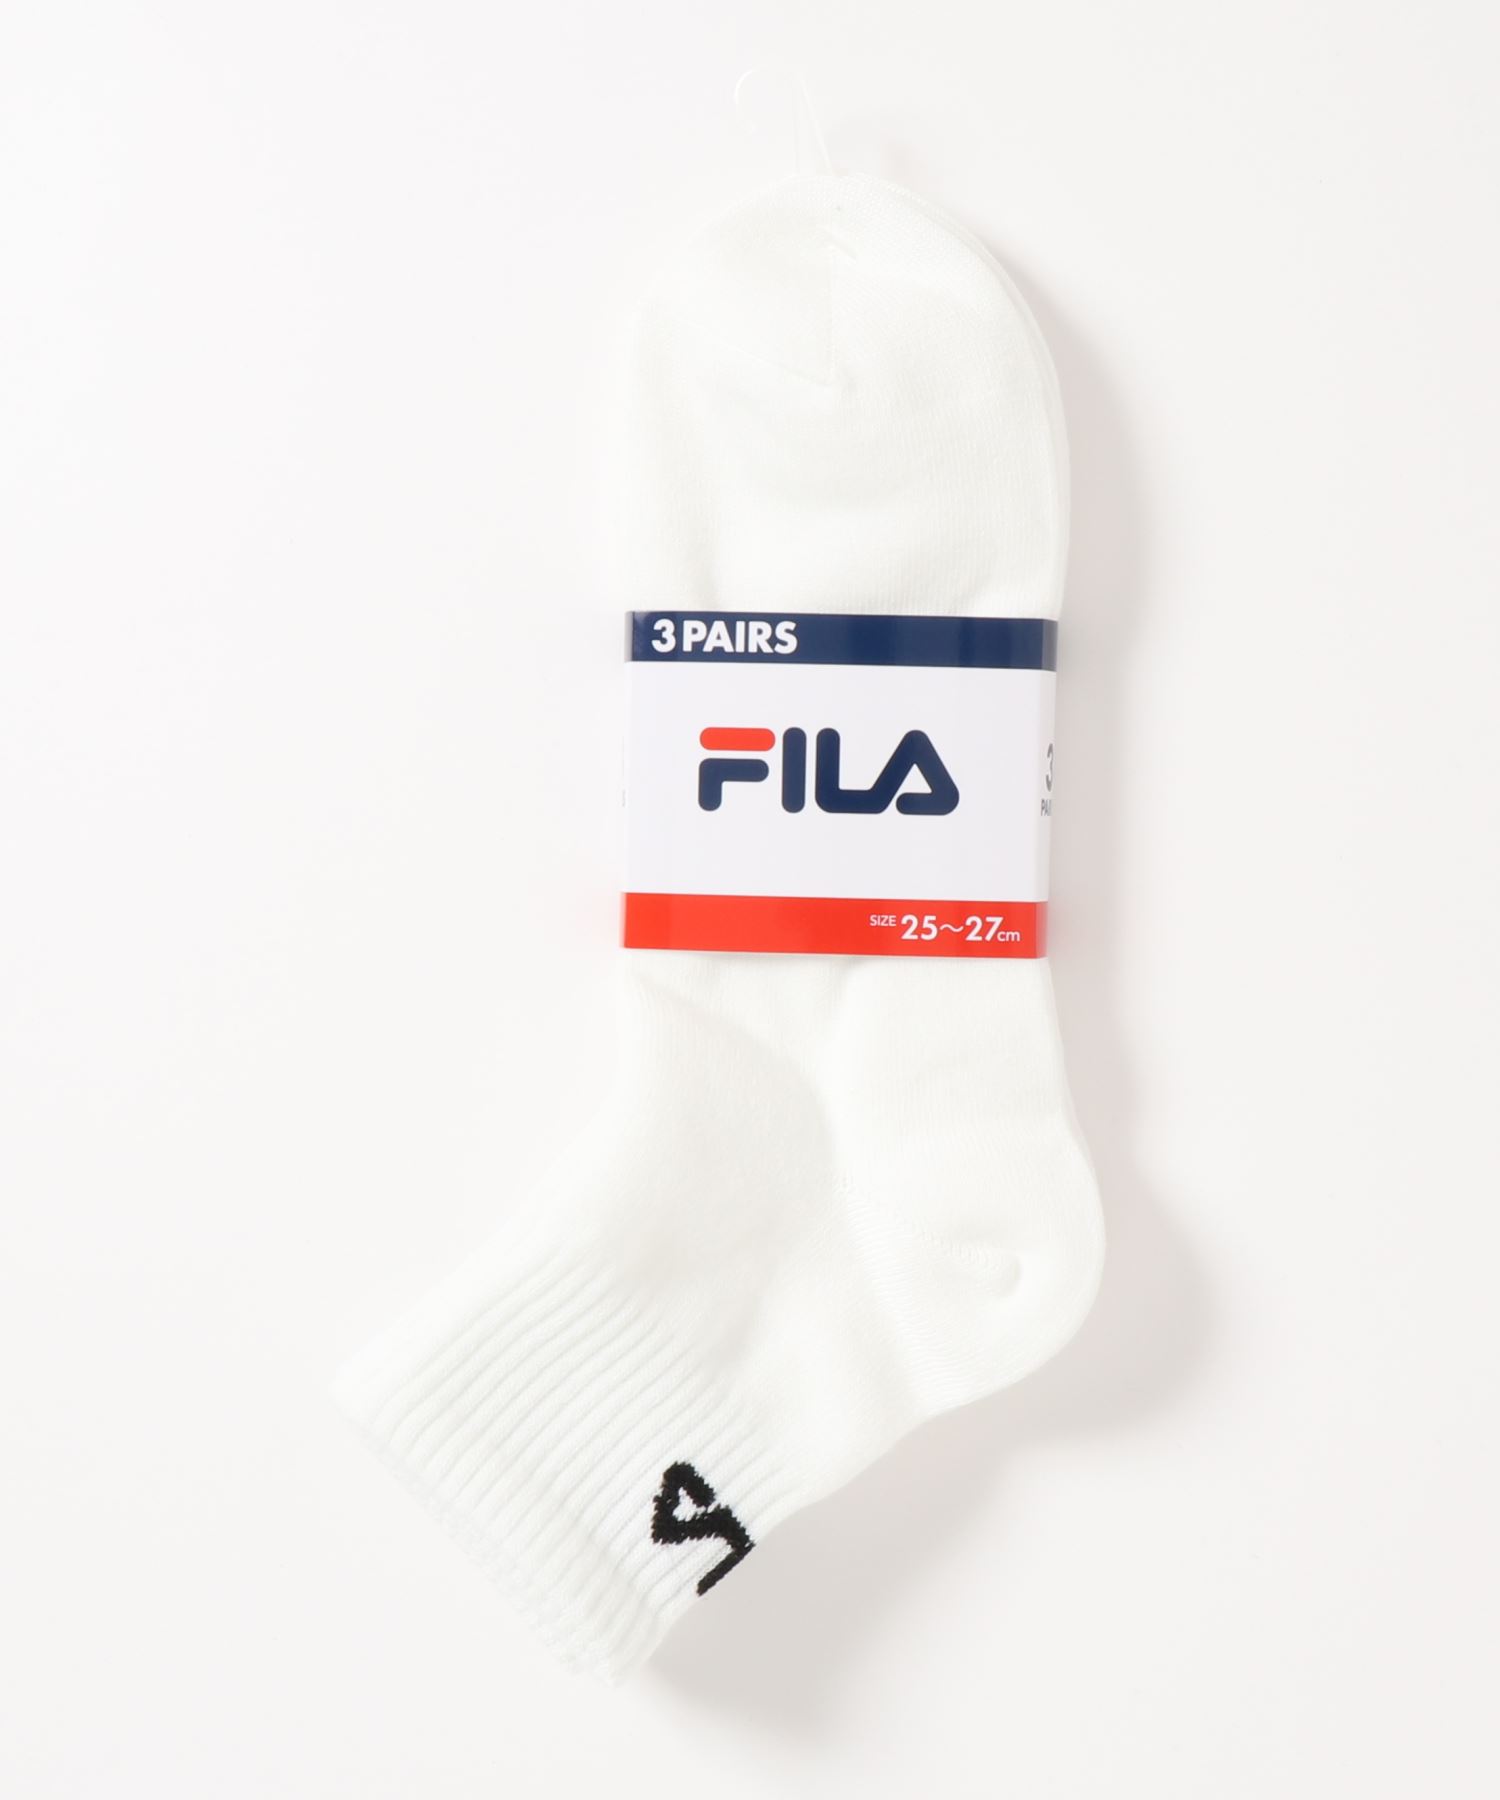 FILAFILA フィラ 全店販売中 ブランド ロゴ 数量は多 メンズ ソックス 靴下 3足セット ショート